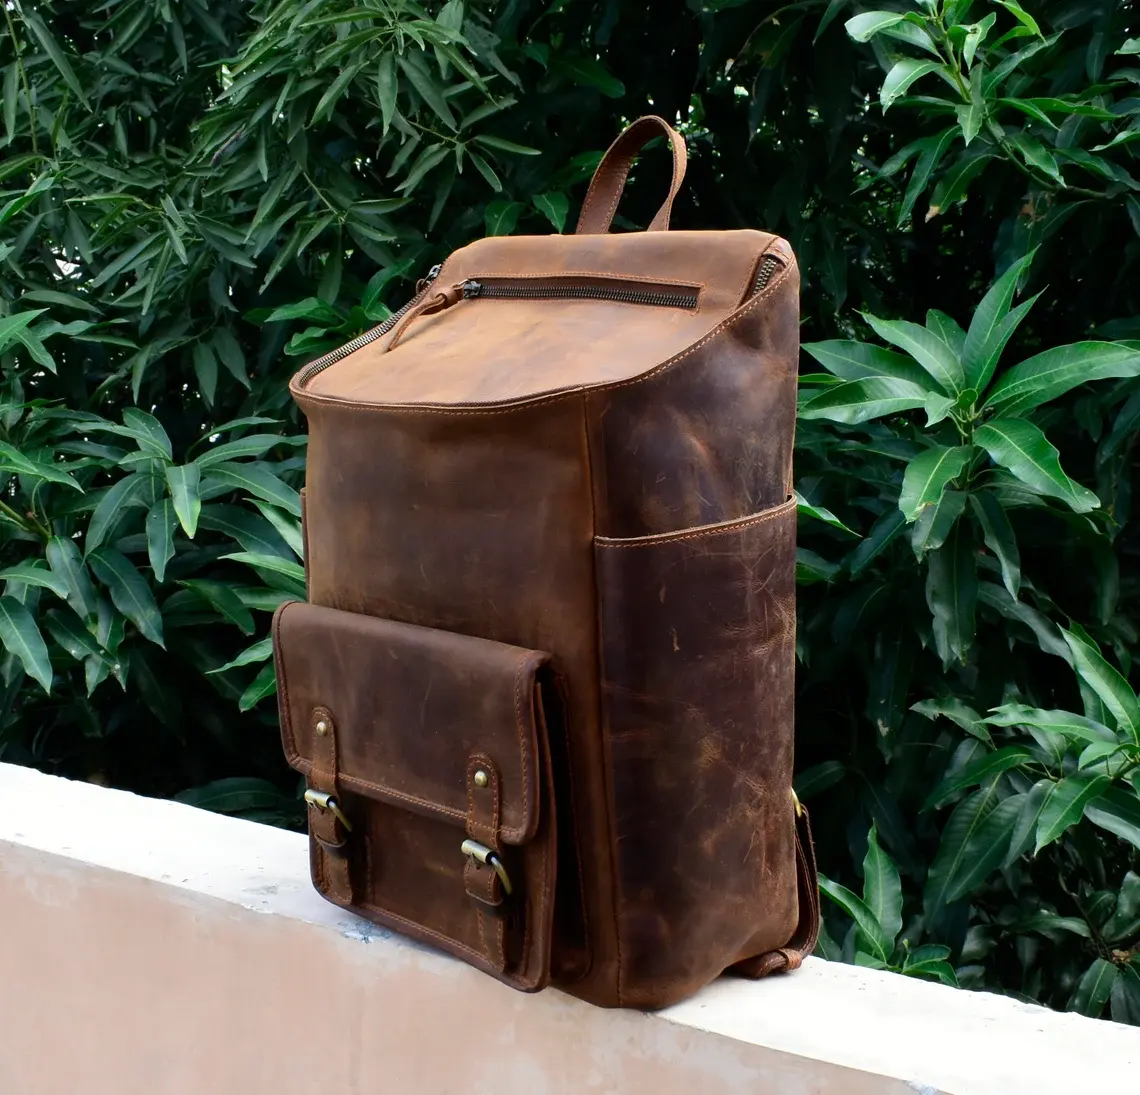 Individuelles handgefertigtes Vollkornleder Reisetaschen-Rechner-Rocksack rustikales braunes Leder bestes Produkt zum besten Preis